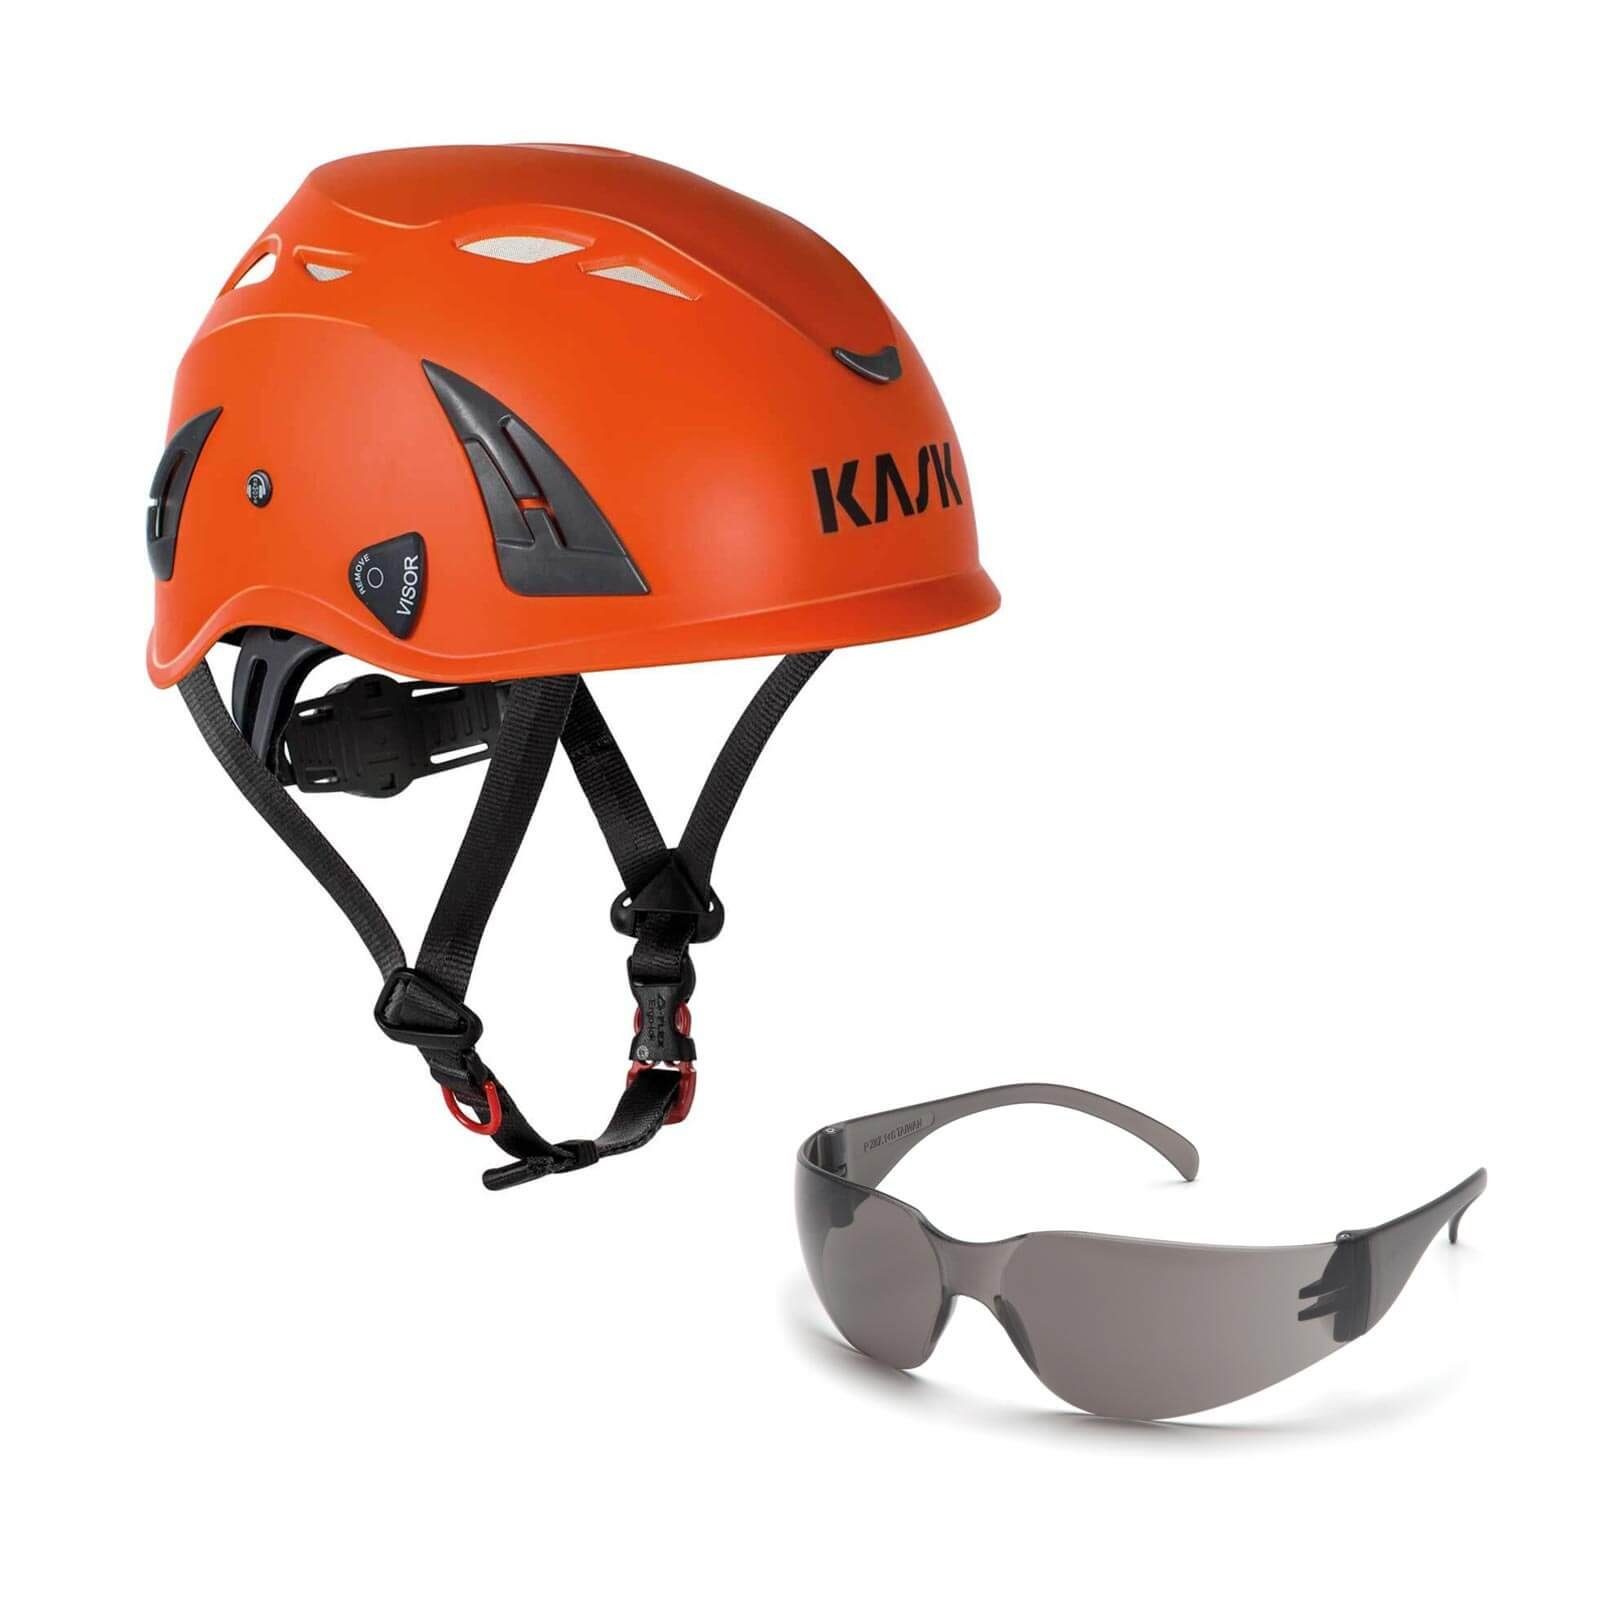 Kask Schutzhelm Bergsteigerhelm, Industriekletterhelm Plasma AQ + Schutzbrille klar orange